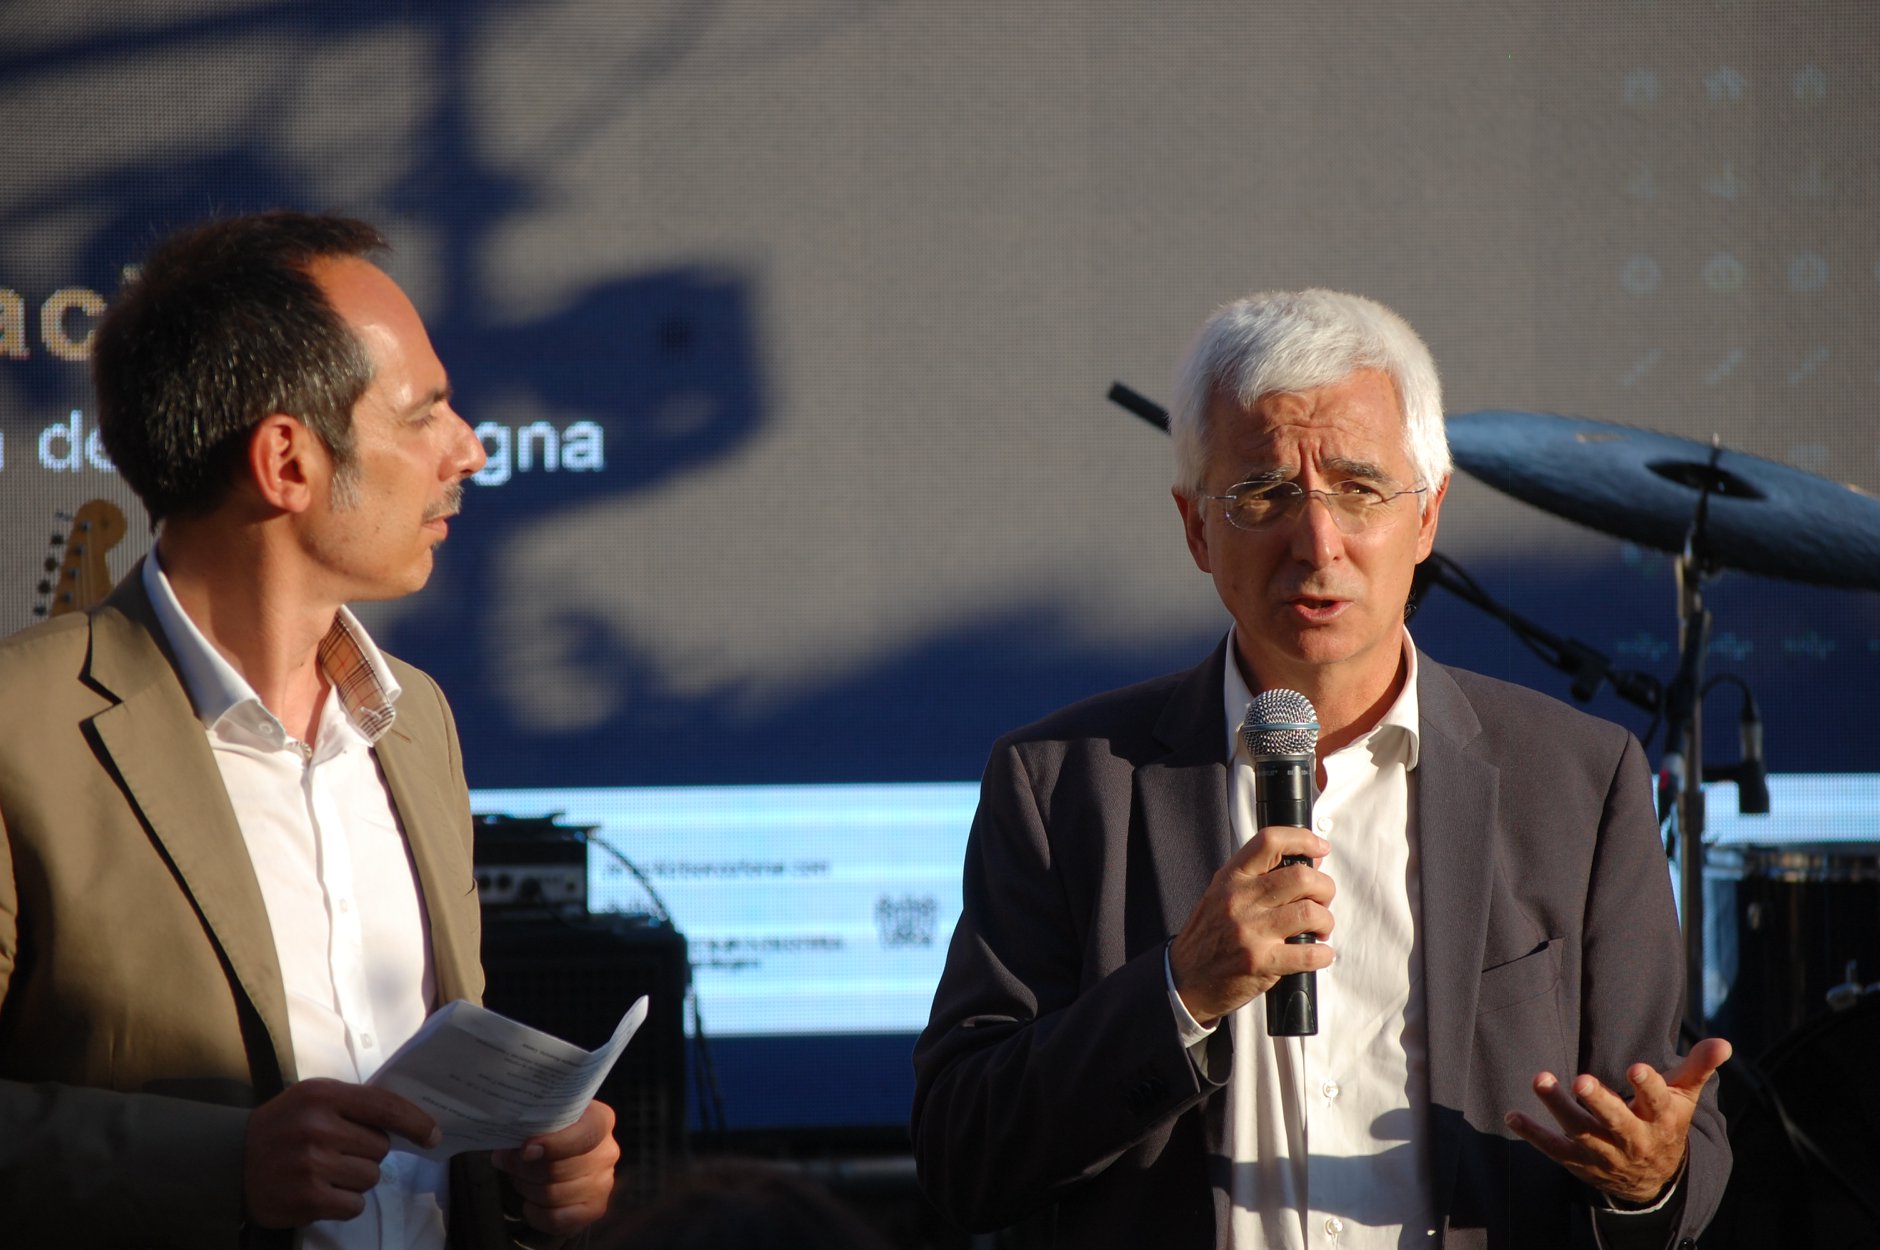 UniCa&Imprese, l'assessore Raffaele Paci intervistato da Mauro Scanu